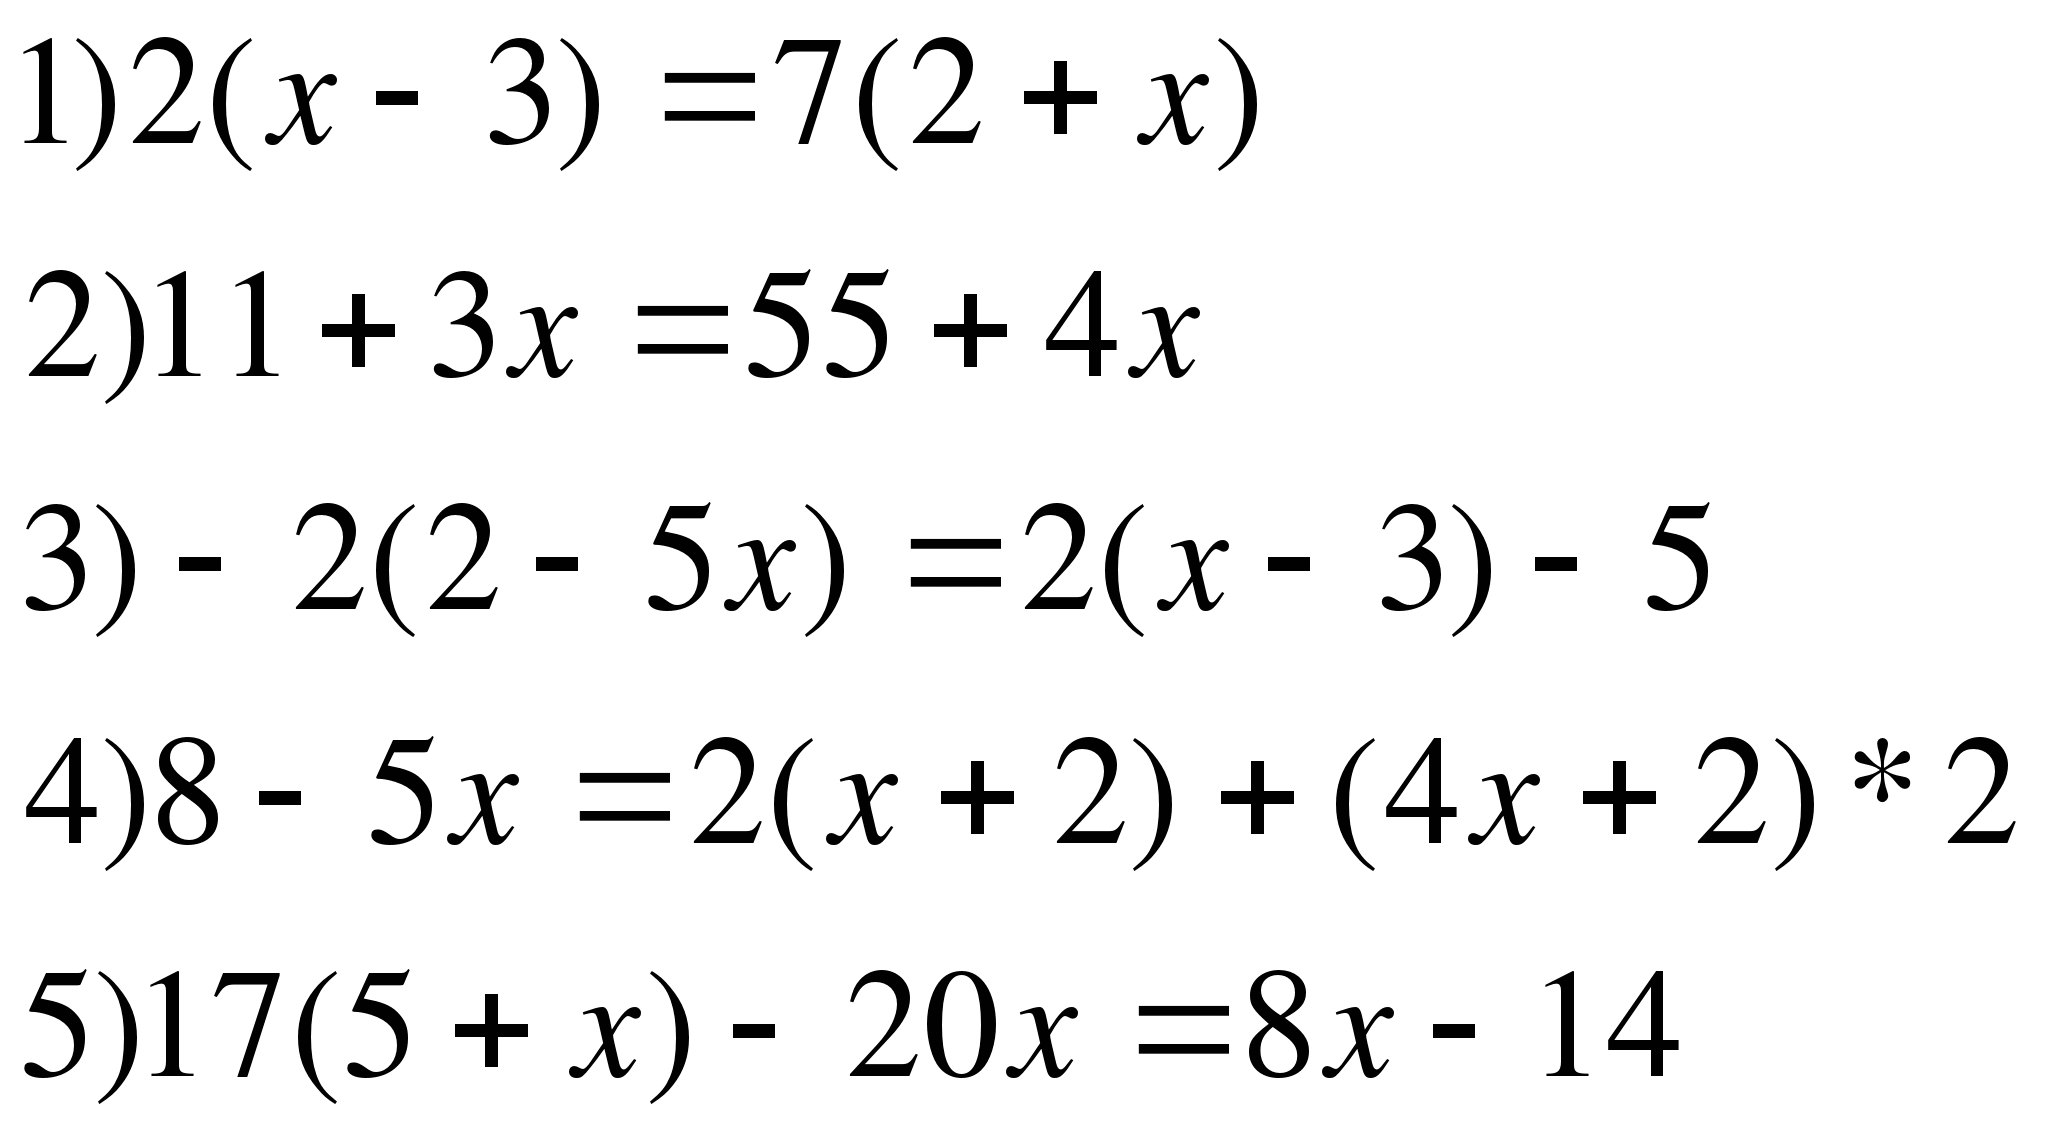 Калькулятор примеров по математике 6 класс. Решение уравнений 6 класс математика. Уравнения 6 класс по математике. Решить уравнение 6 класс. Уравнения 6 класс по математике со скобками.